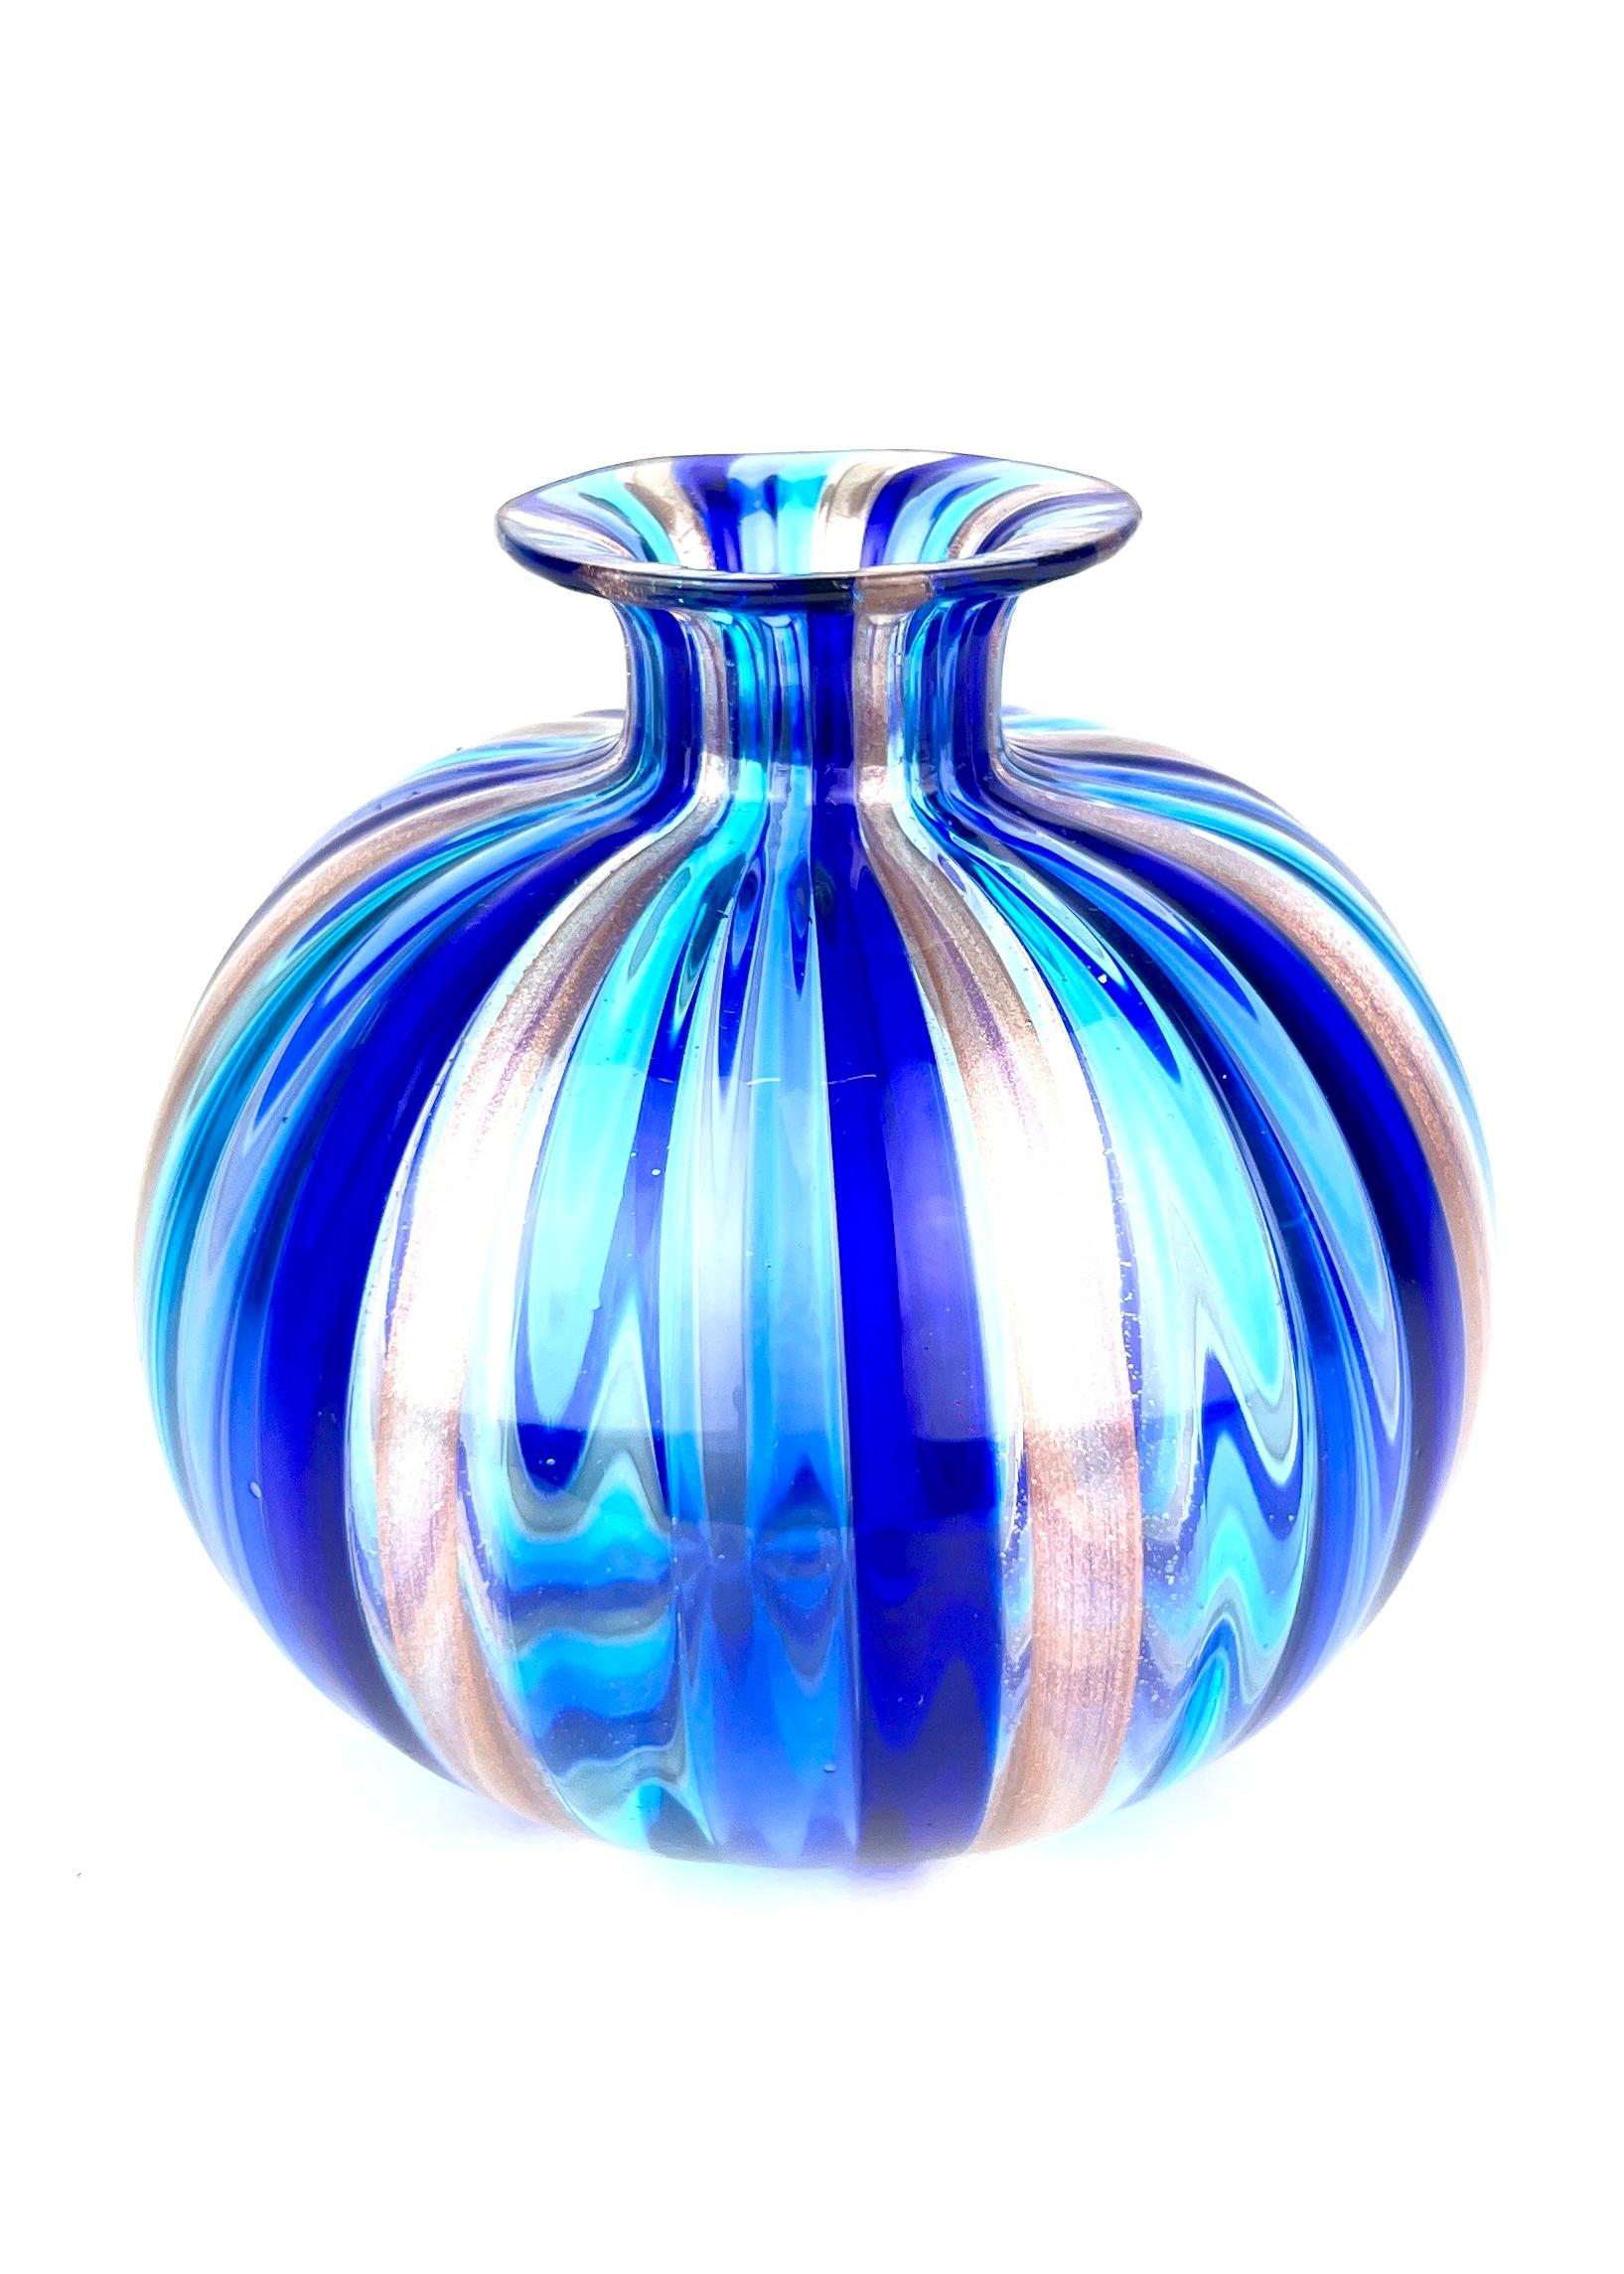 Kanne Drite Collection - Vasen aus blauem Muranoglas
Die Kanne besteht aus farbigen Murano-Glaszylindern, die, auf der Vase verschmolzen, dieses wunderbare Werk bilden.
Drite wird gesagt, wenn die Kane so positioniert sind, dass sie senkrecht